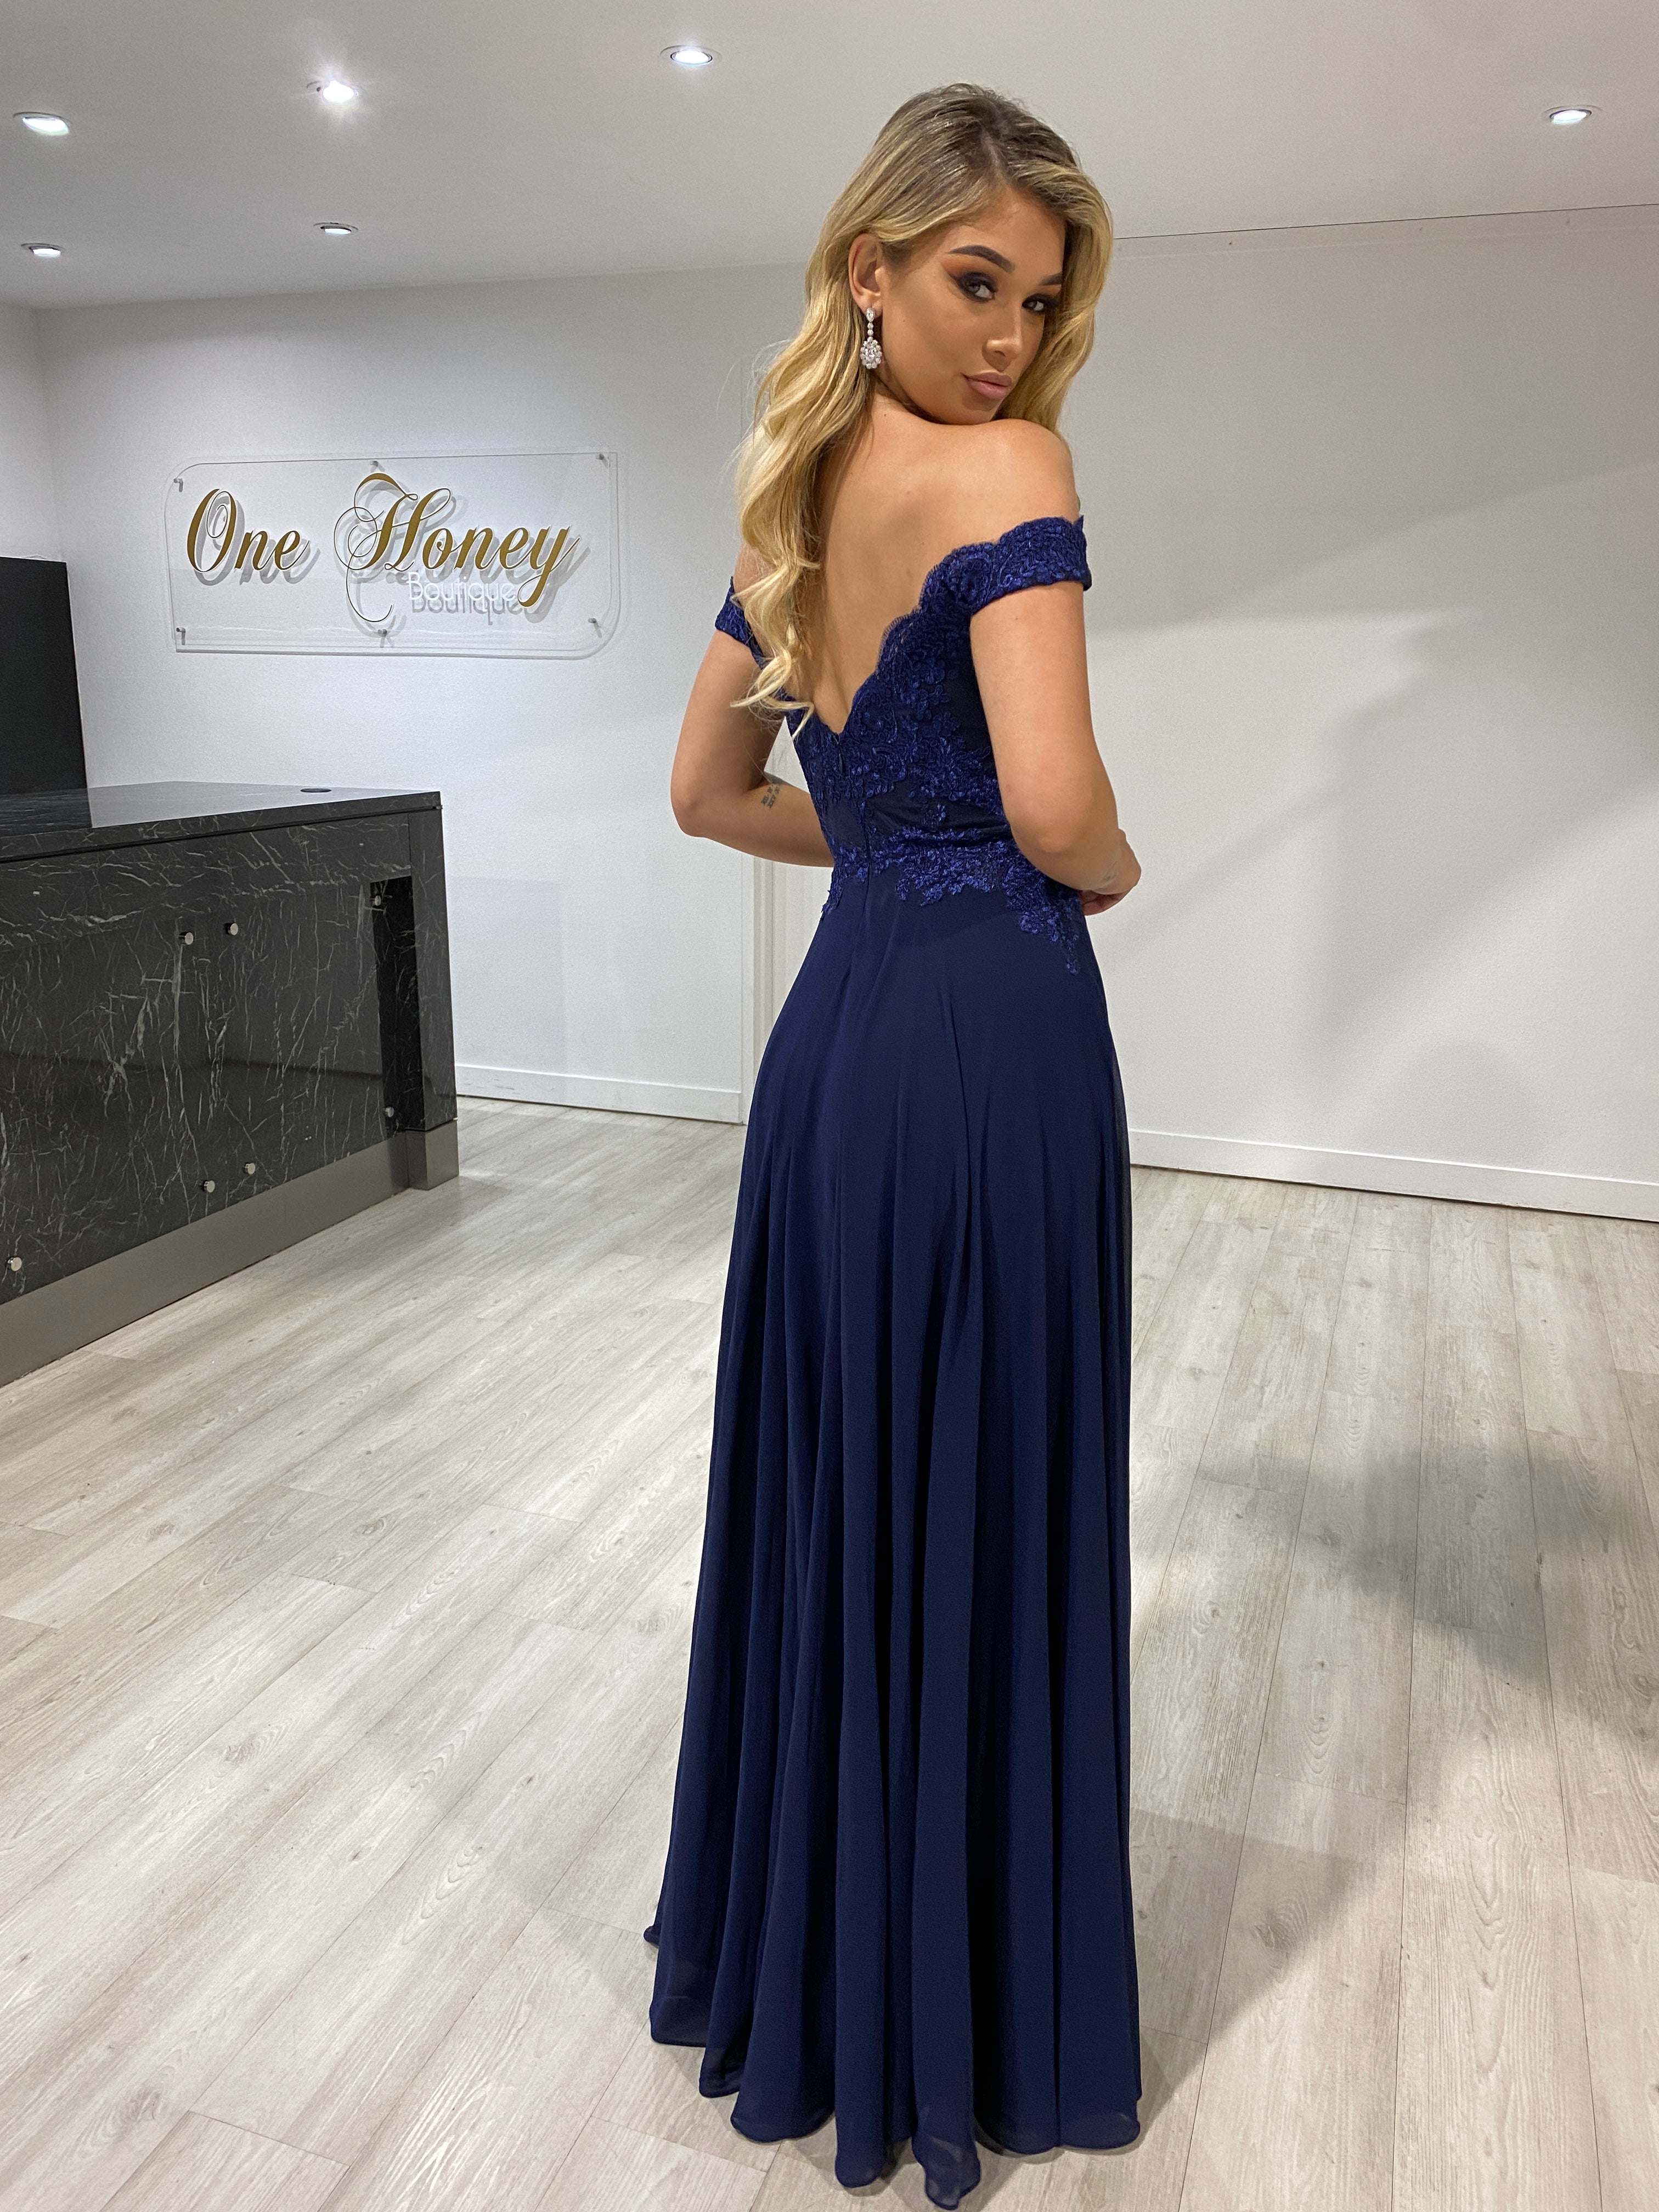 Honey Couture CARMEN Navy Blue Lace Applique Chiffon Bridesmaid Formal Dress